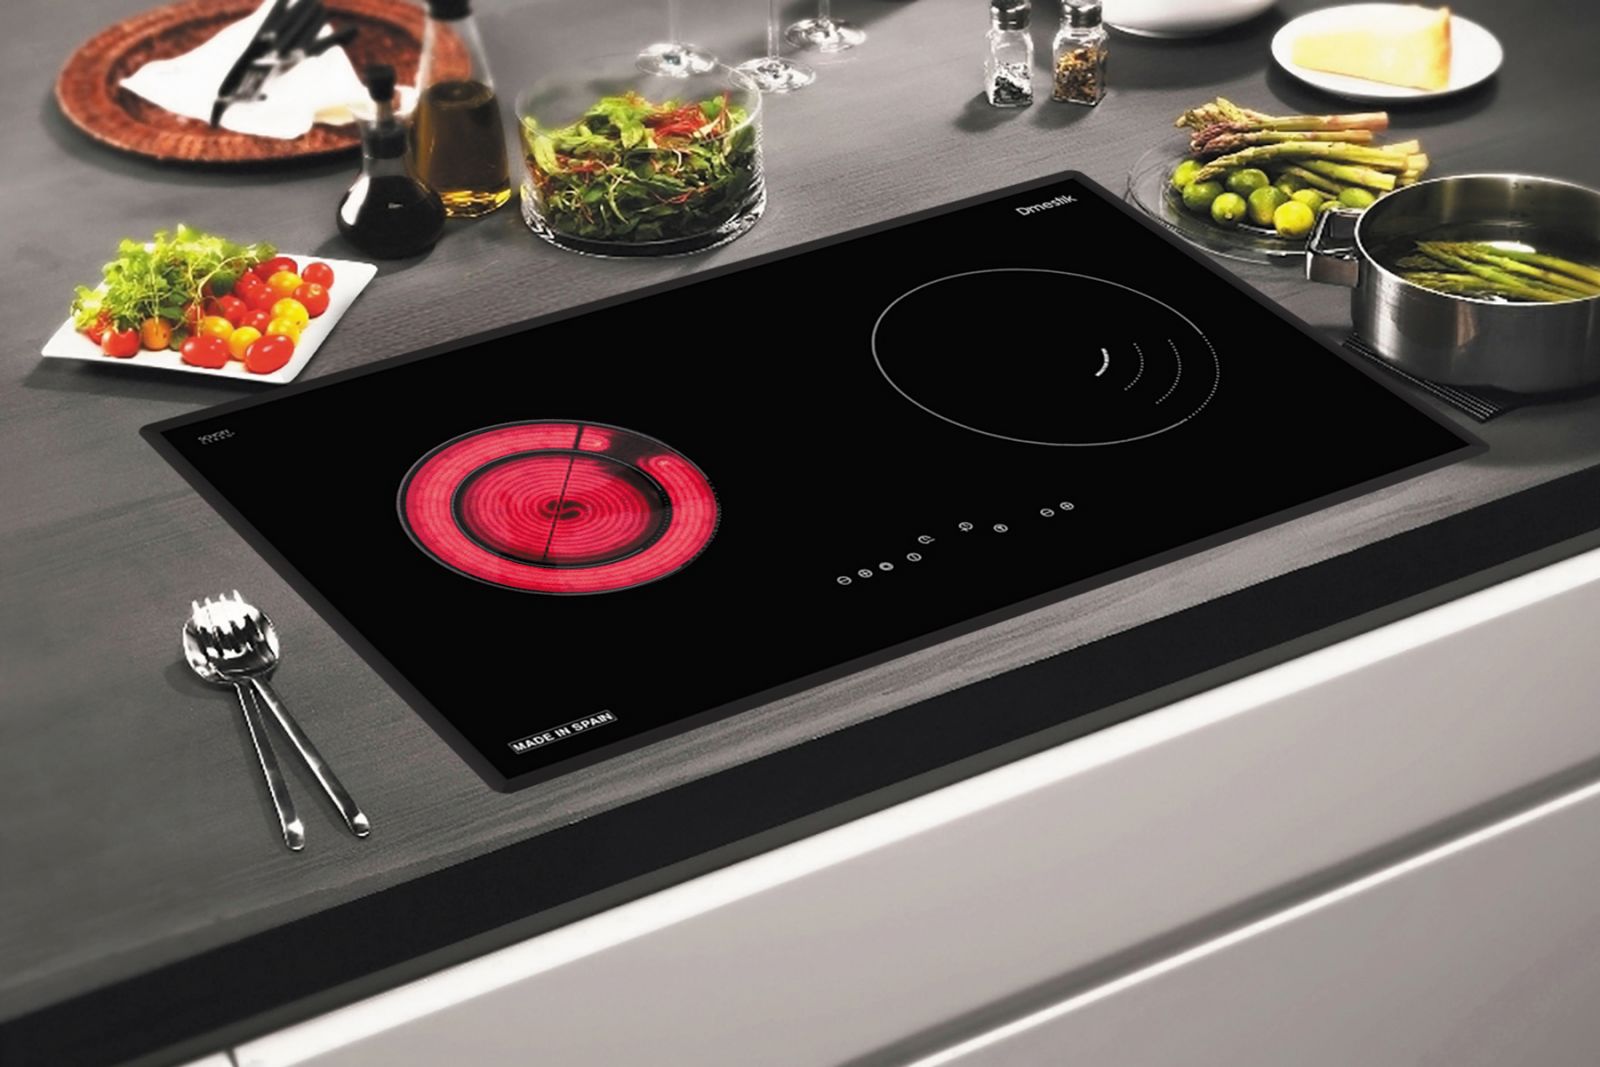 Hiệu suất bếp có thể đạt tới 75% nhờ công nghệ EGO 